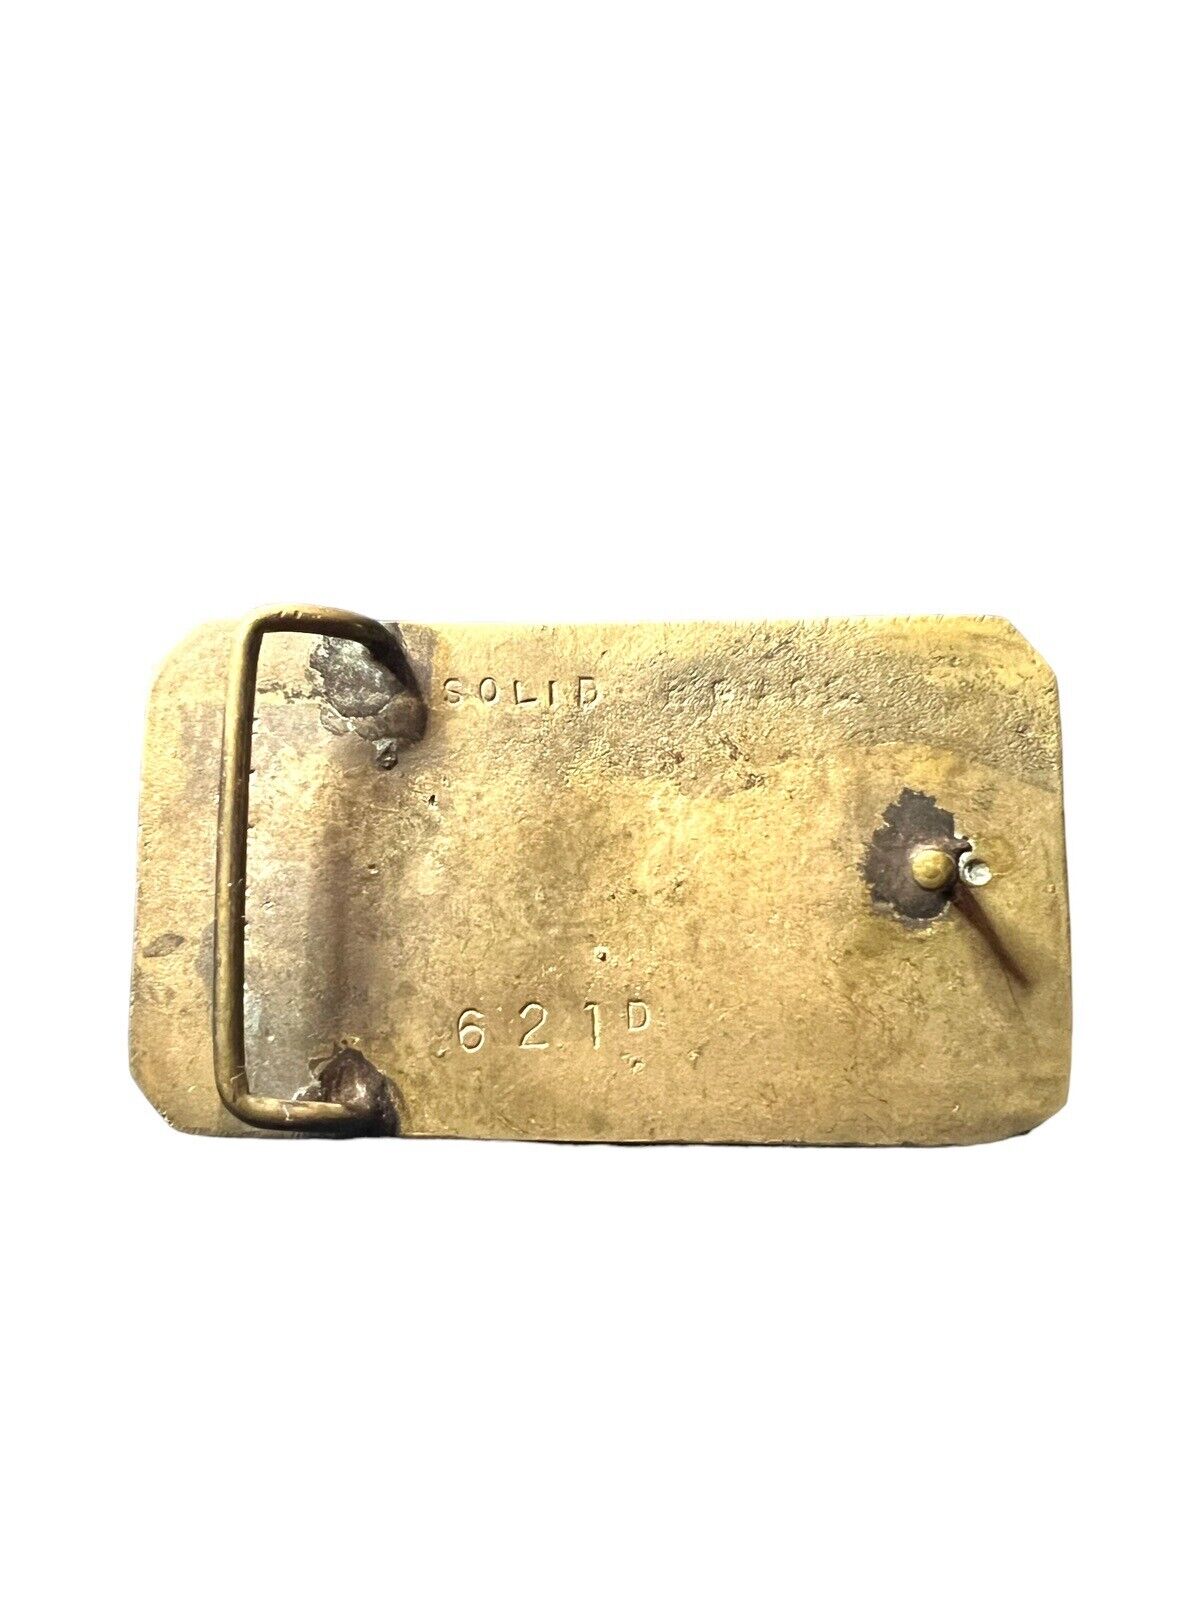 Vintage Solid Brass Coors Belt Buckle - image 2